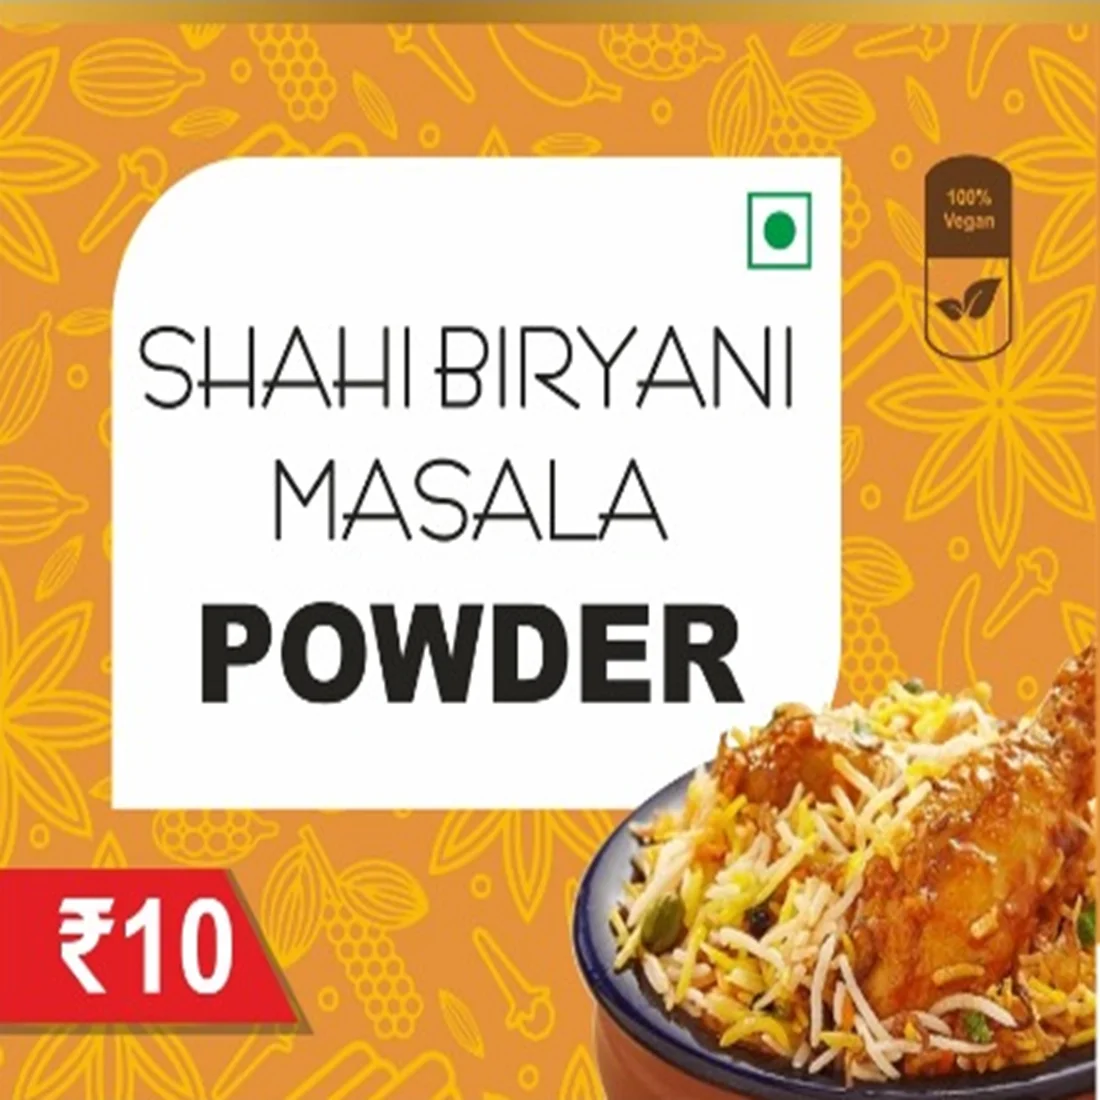 Shahi Biriyani Masala Powder